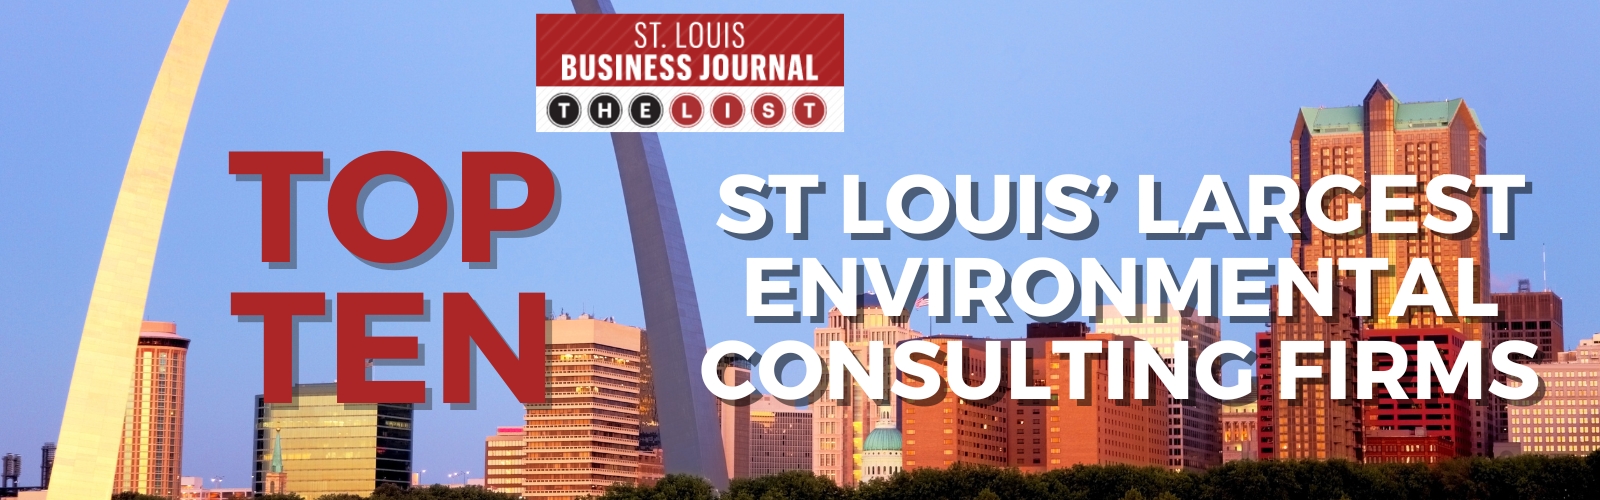 St. Louis Business Journal Banner